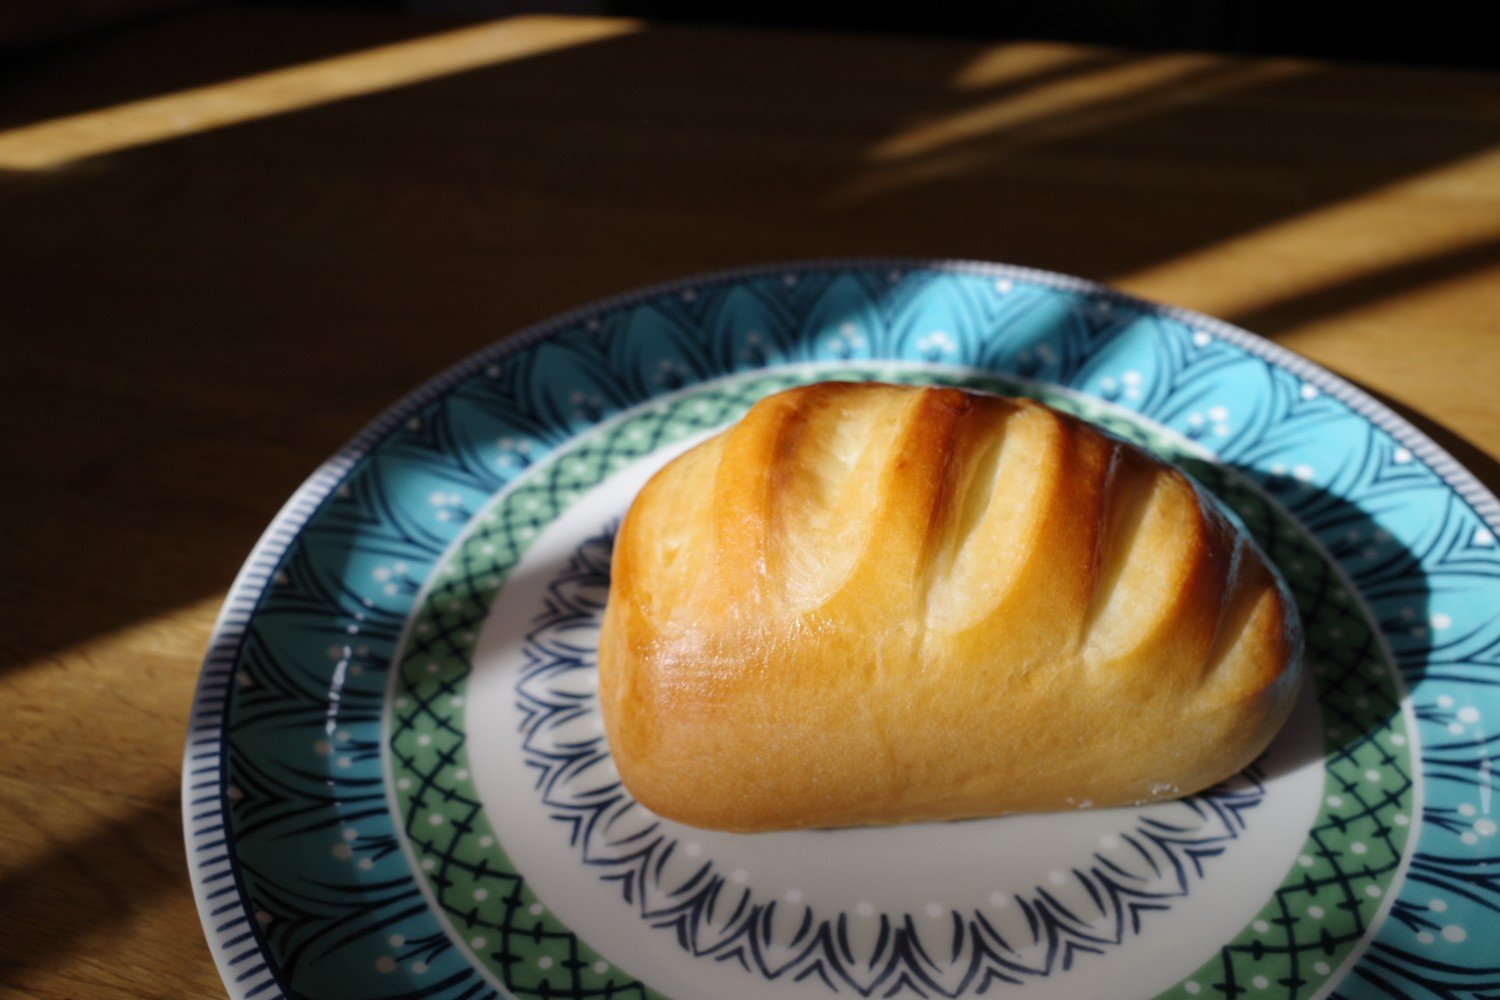 コロンとした形と美しいクープ(切れ込み)が愛らしいパン ヴィエノワ180円。